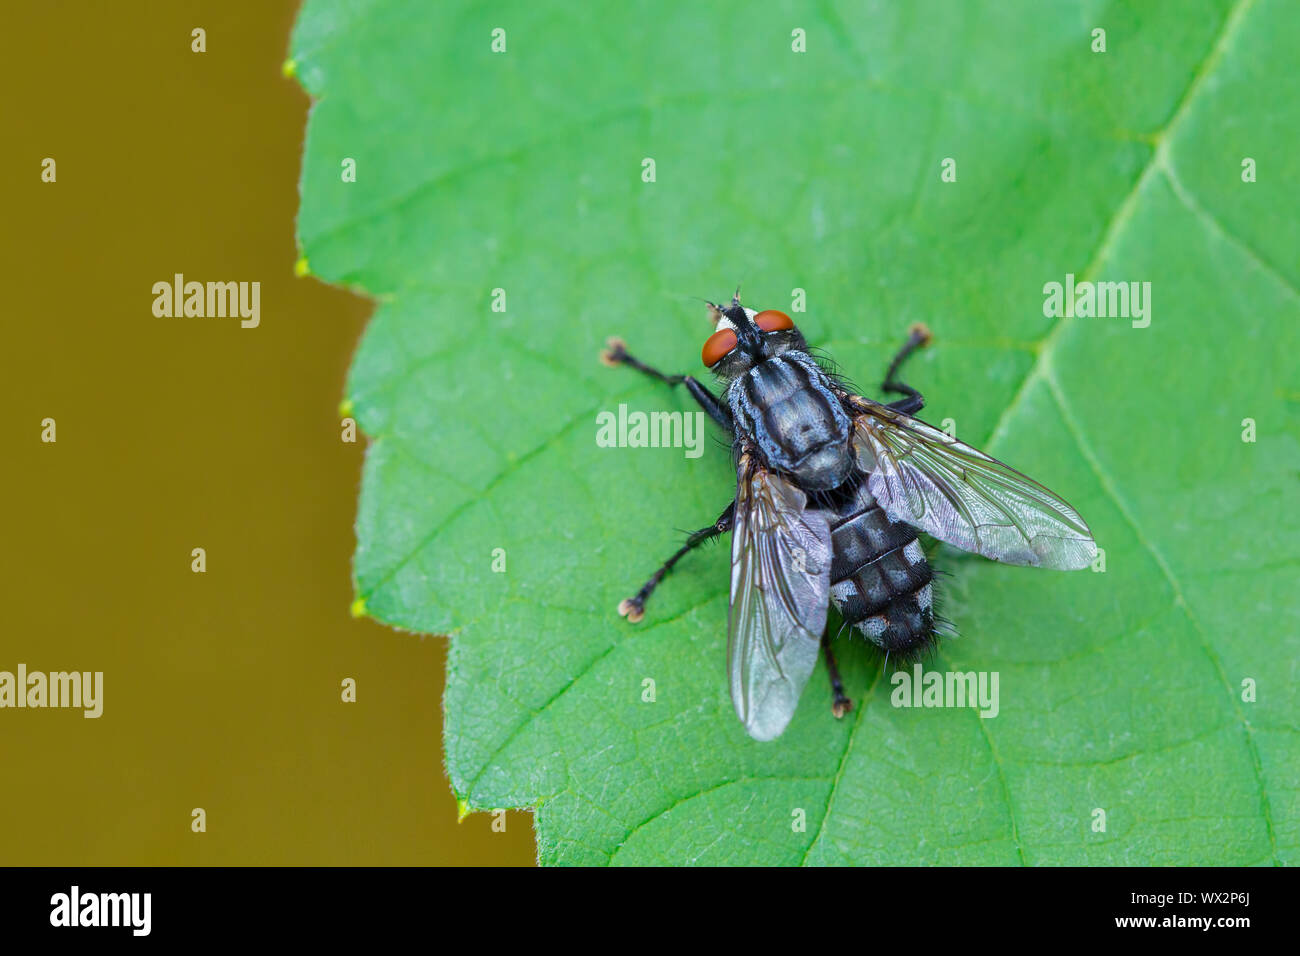 Blue fly si siede sul verde foglia di uva Foto Stock